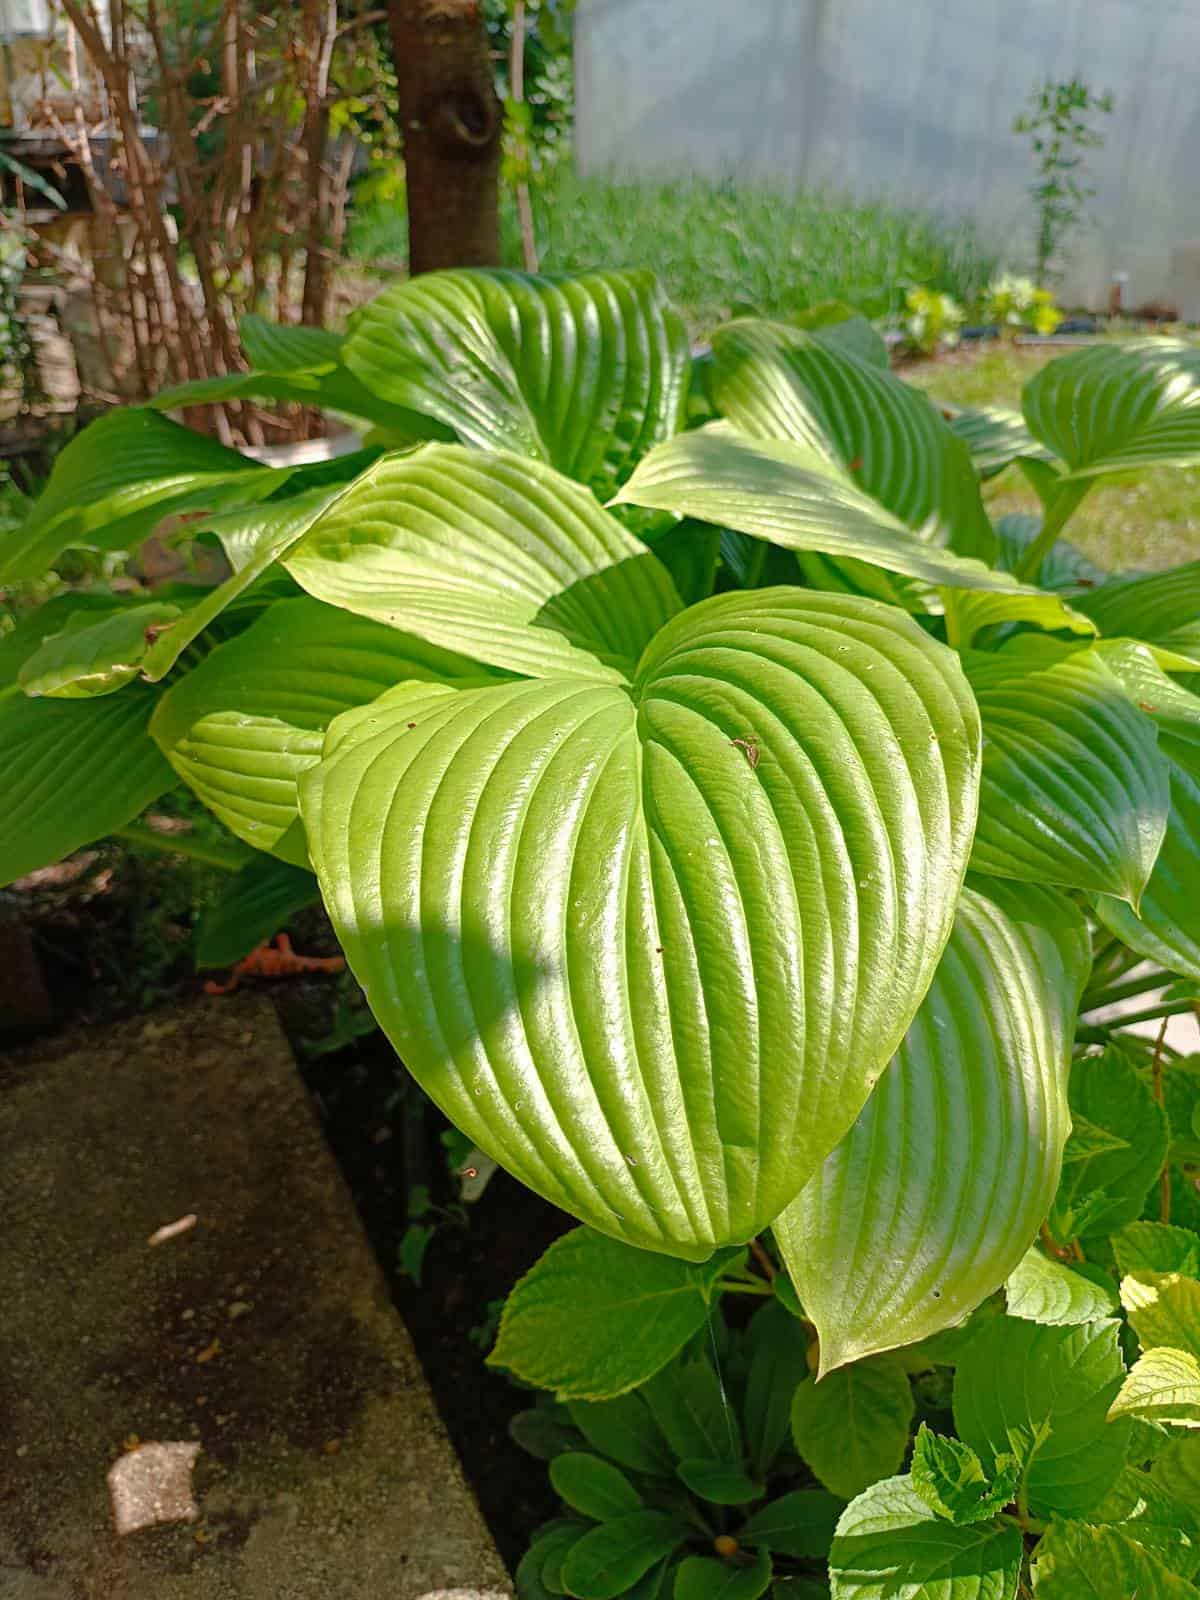 photo of hosta plant, as a border plant in garden